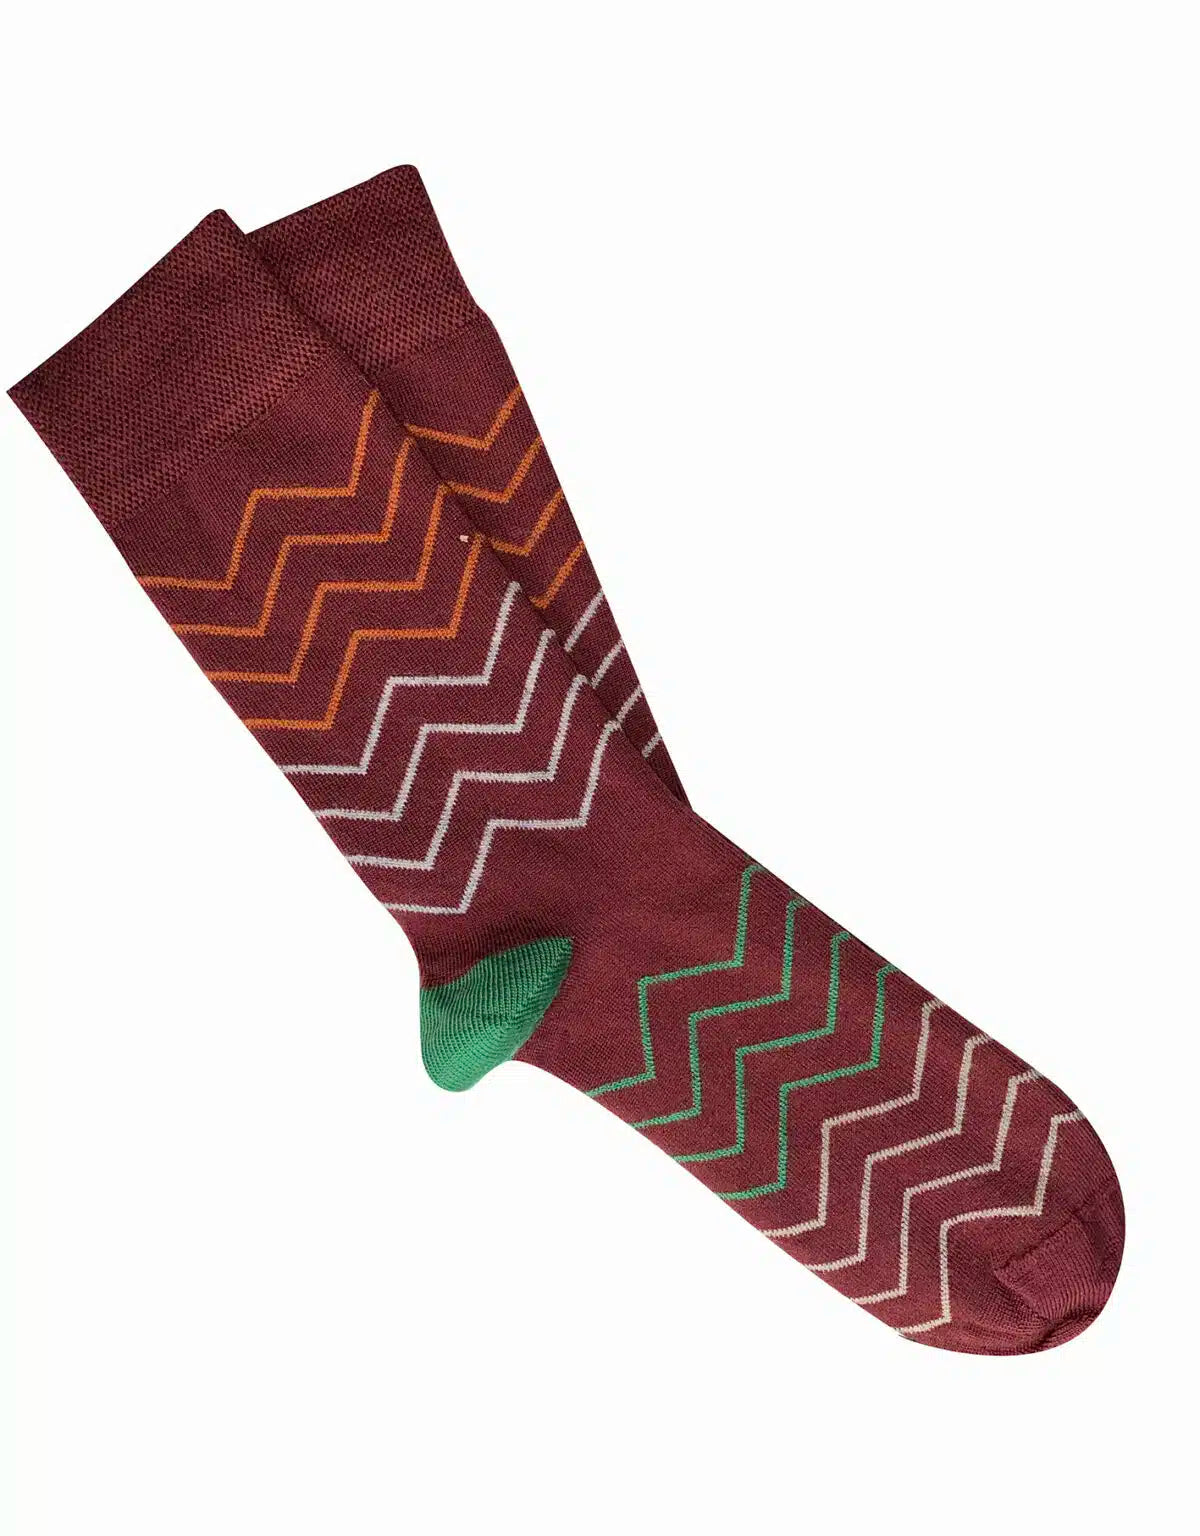 'Waves' Merino Socks - Tightology socks Tightology Burgundy 